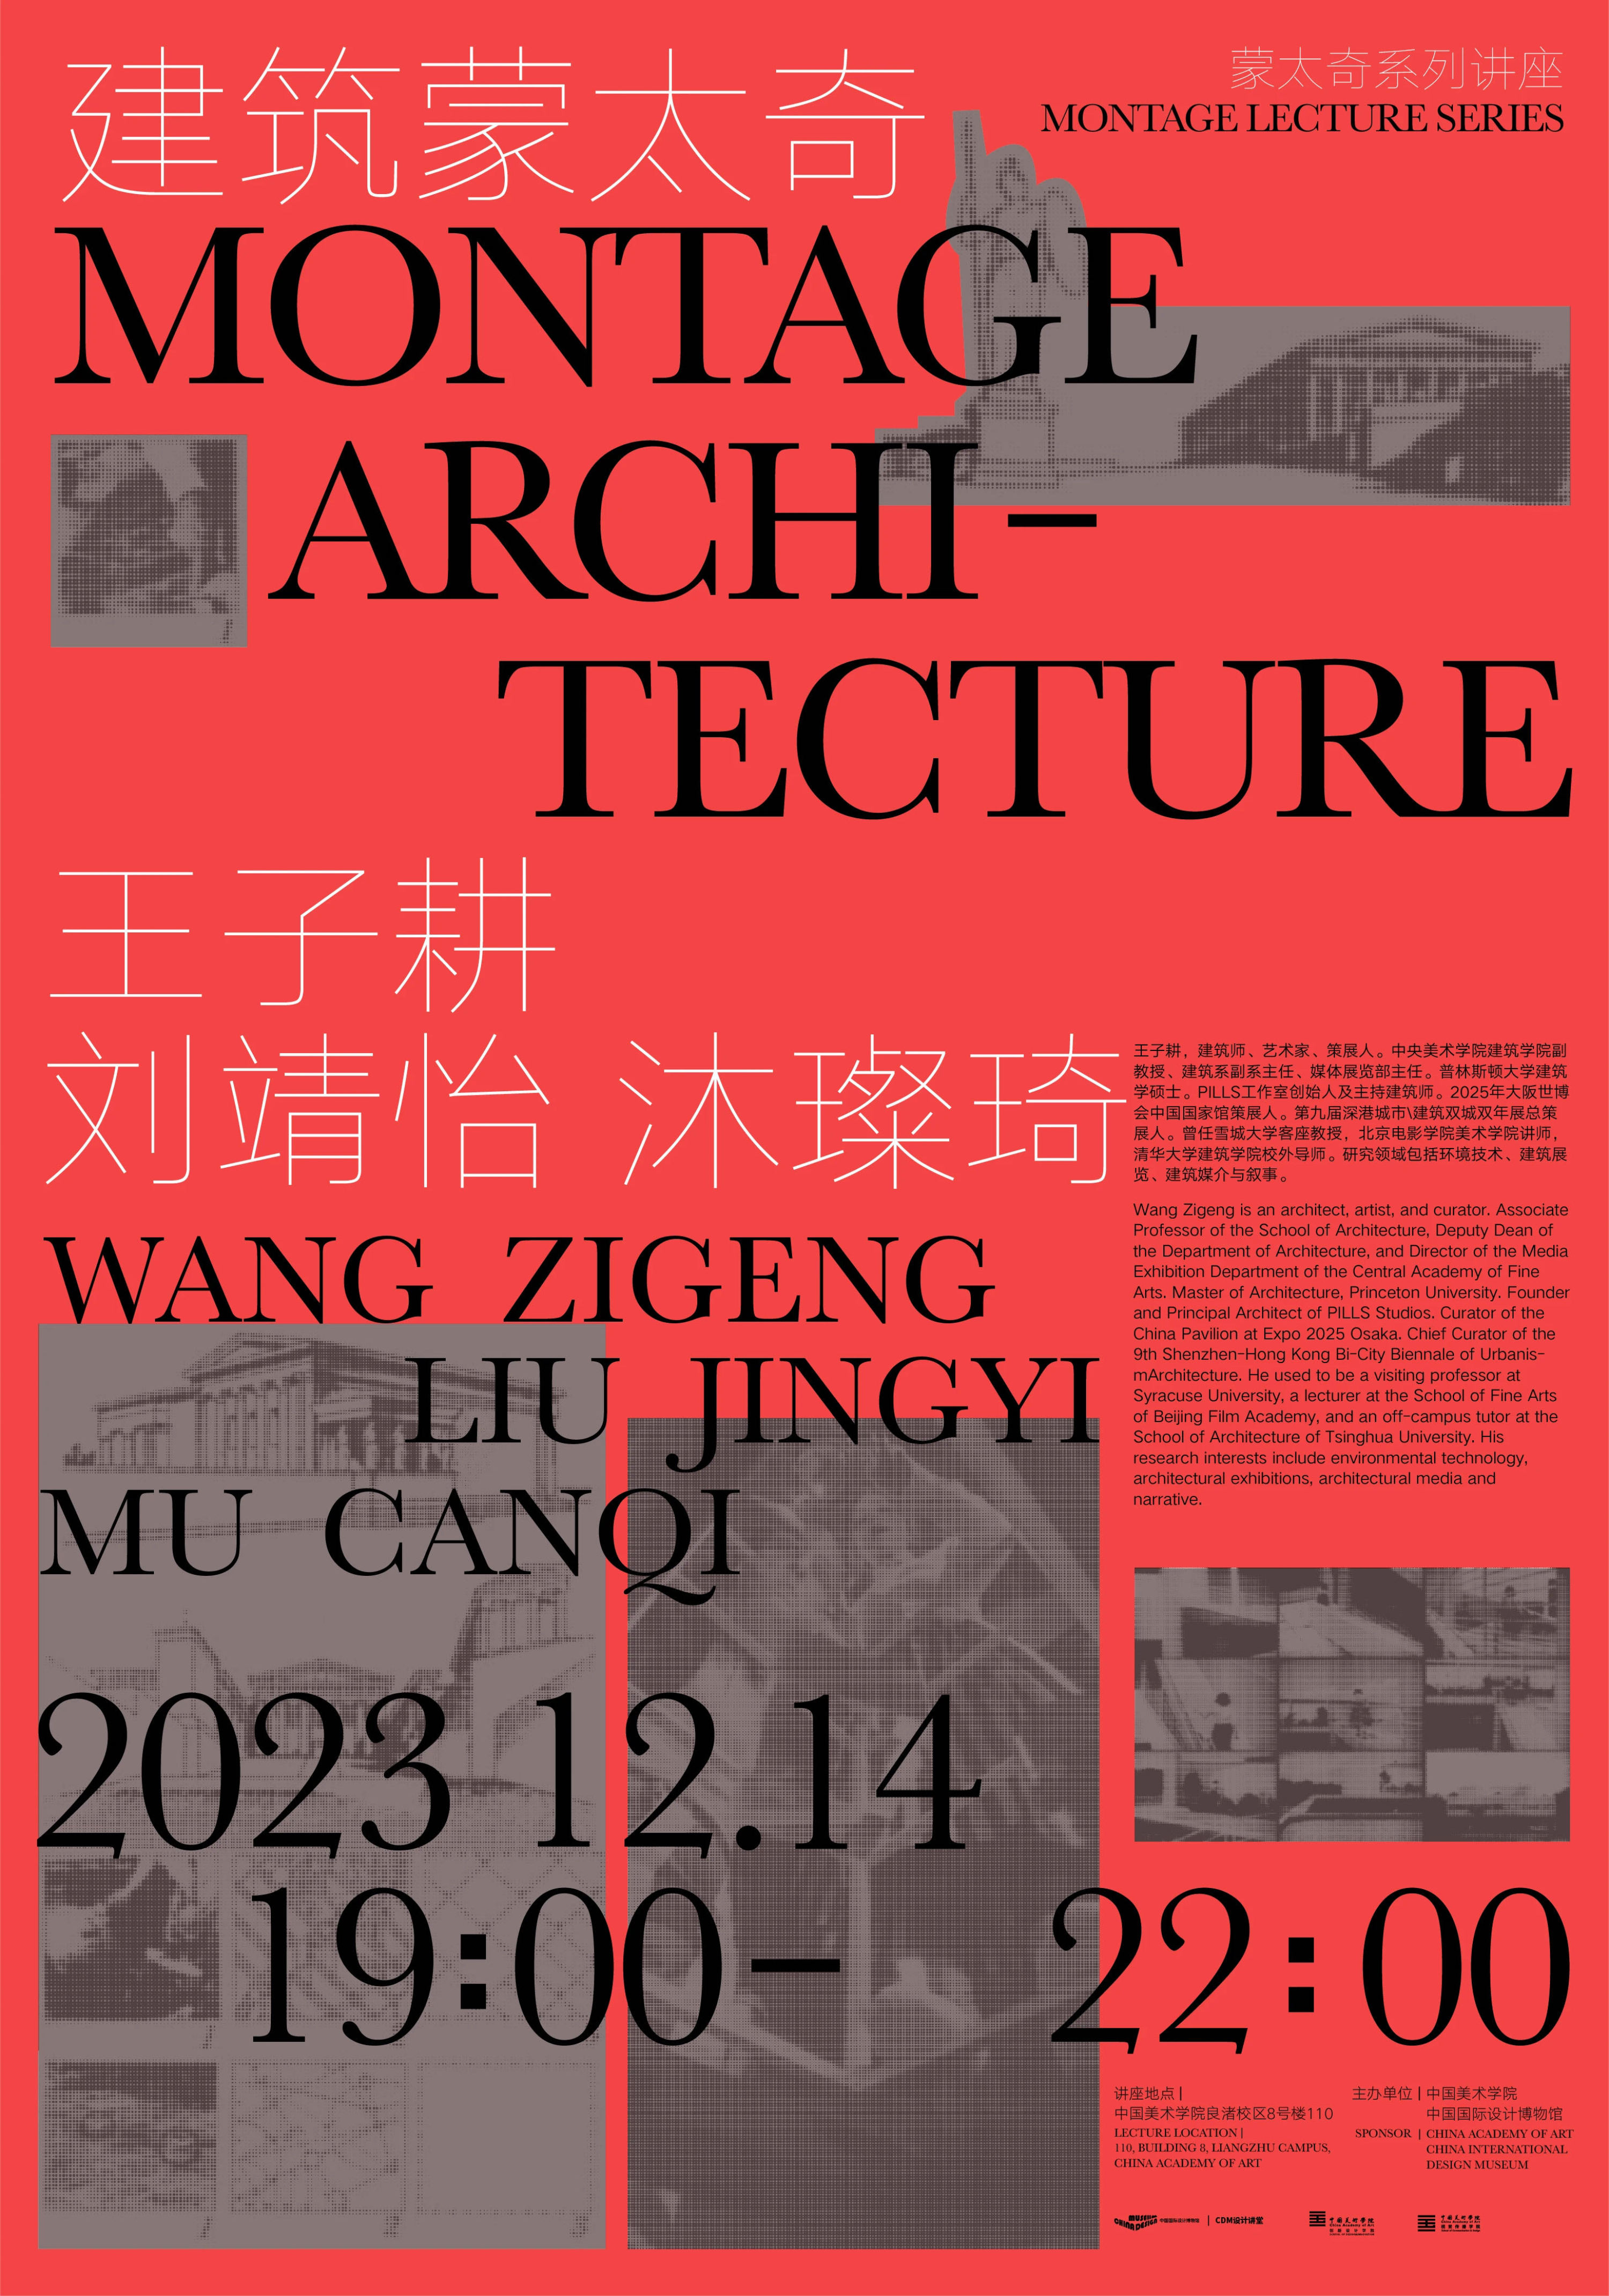 PILLS受中国国际设计博物馆蒙太奇系列讲座邀请分享《爱森斯坦与建筑蒙太奇》课程